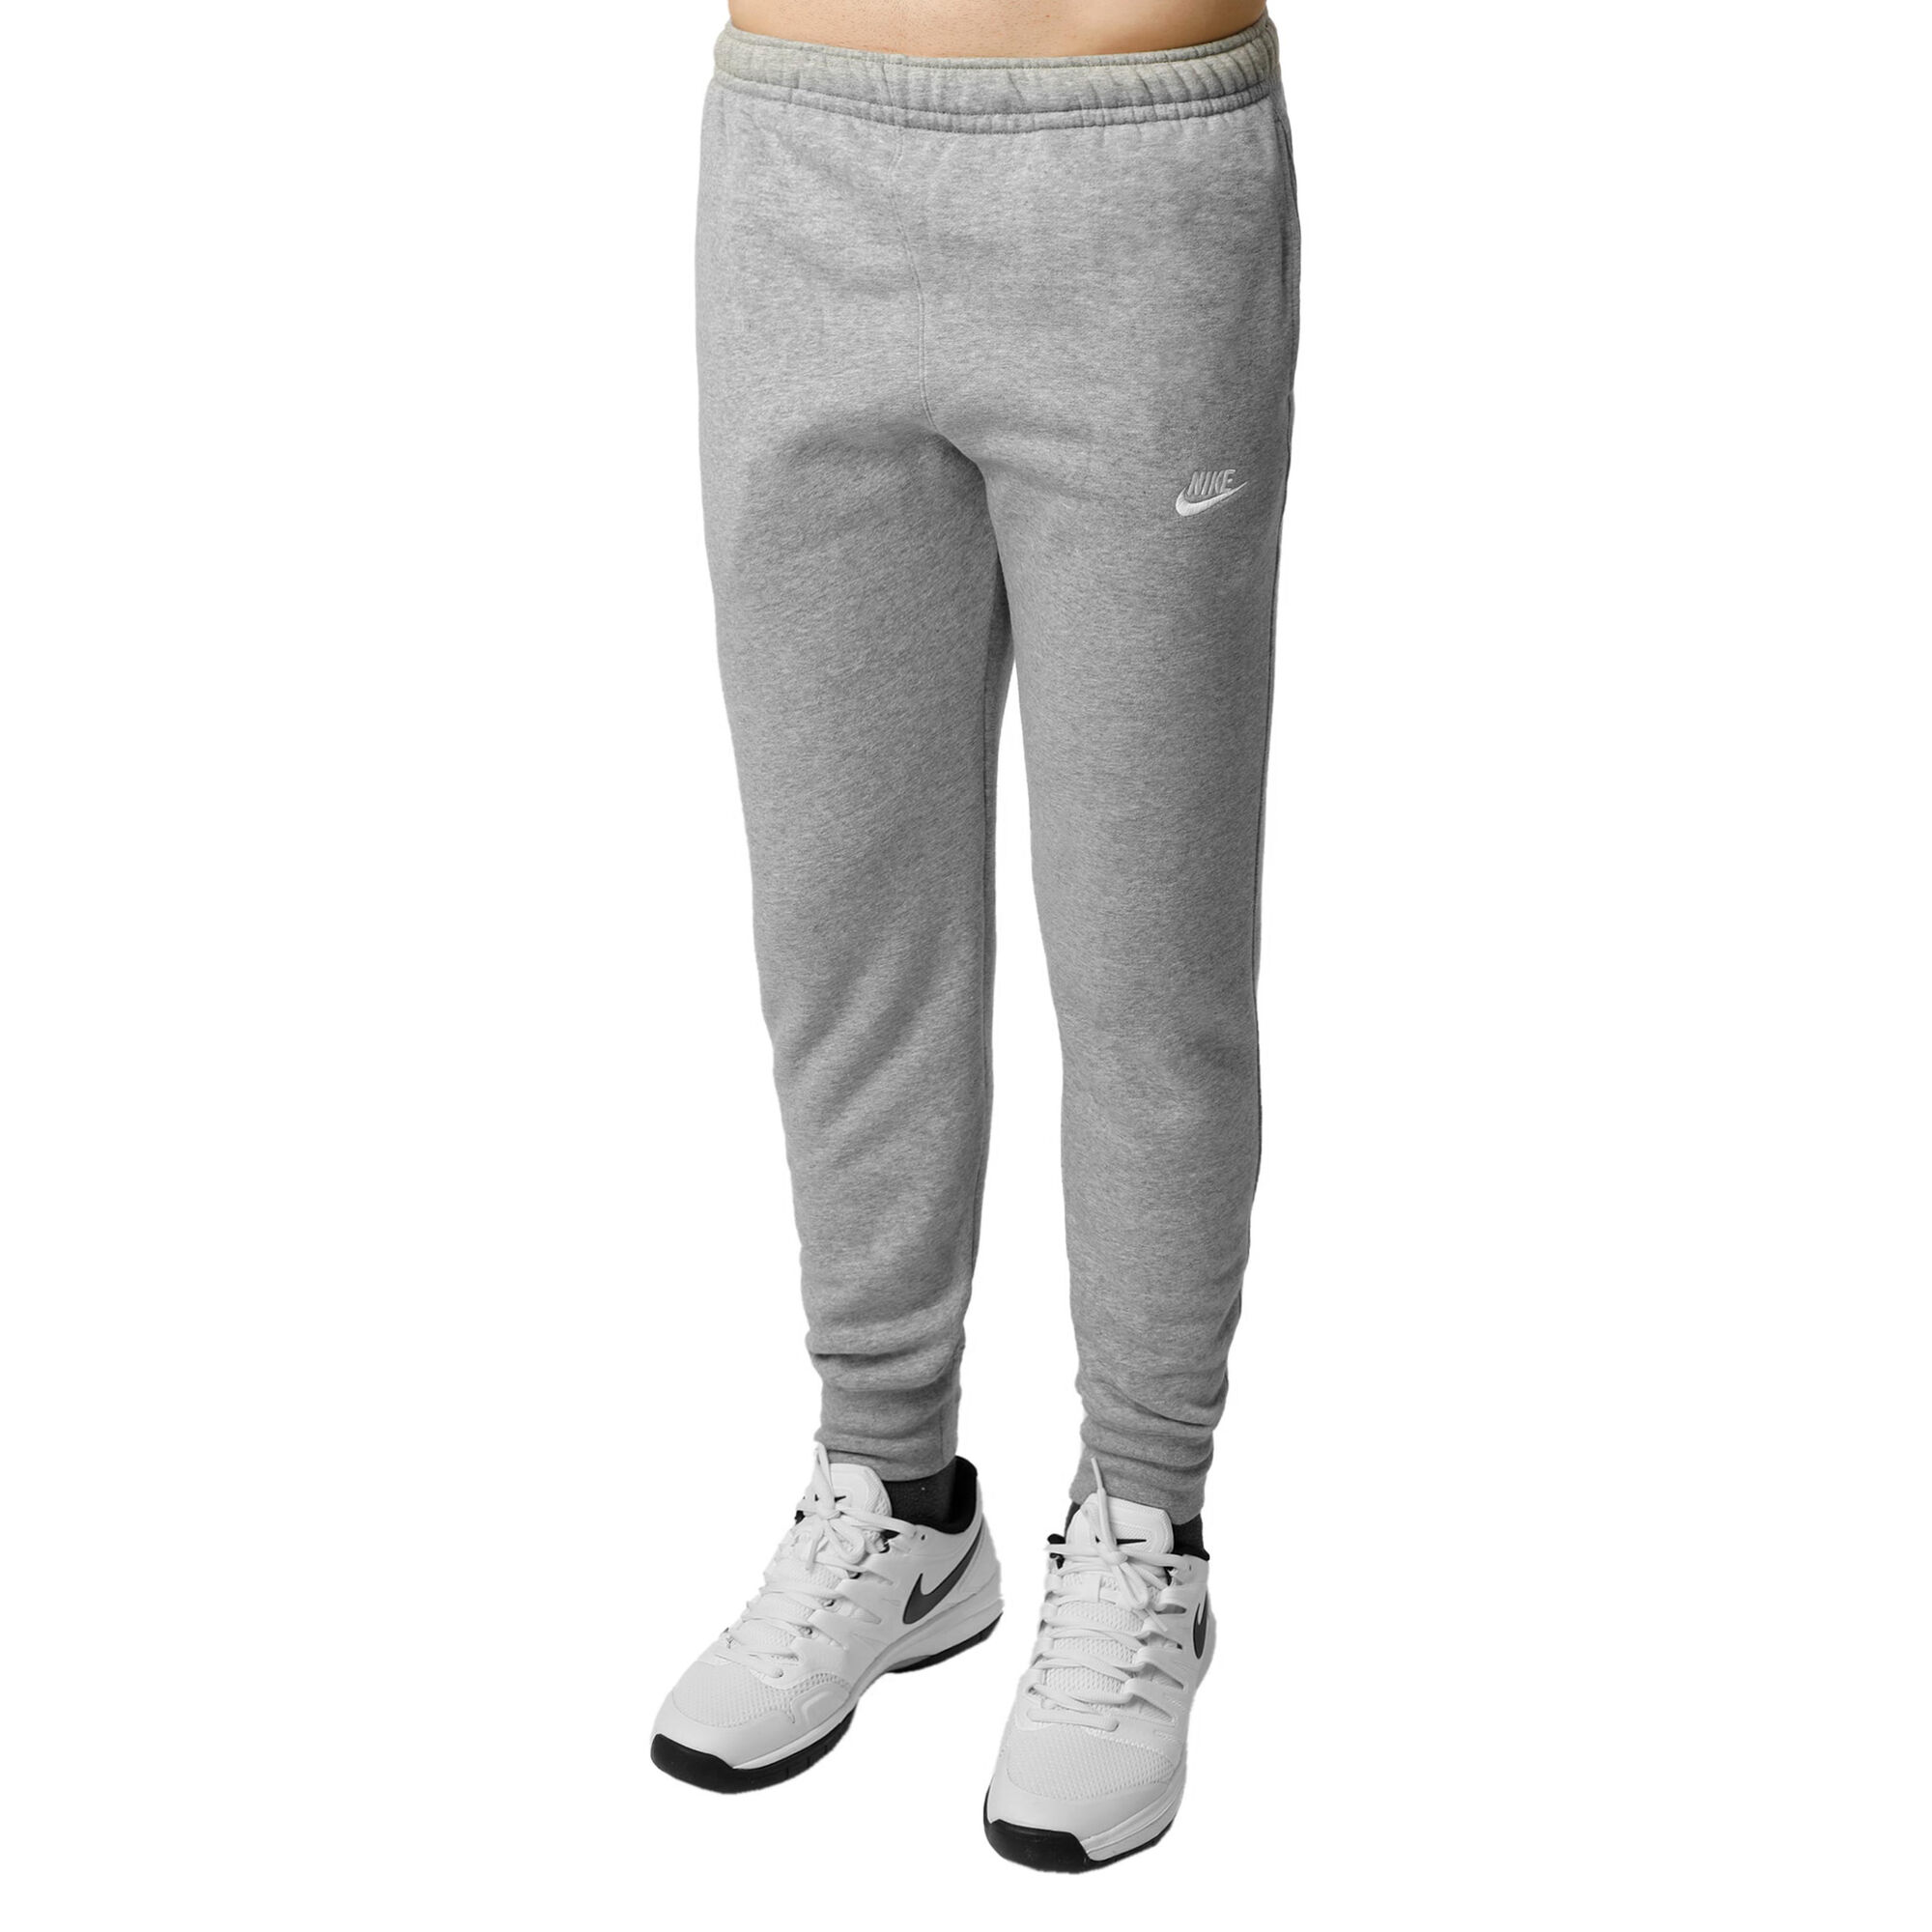 Buy Nike Sportswear Club Fleece Training Pants Men Grey, Silver online